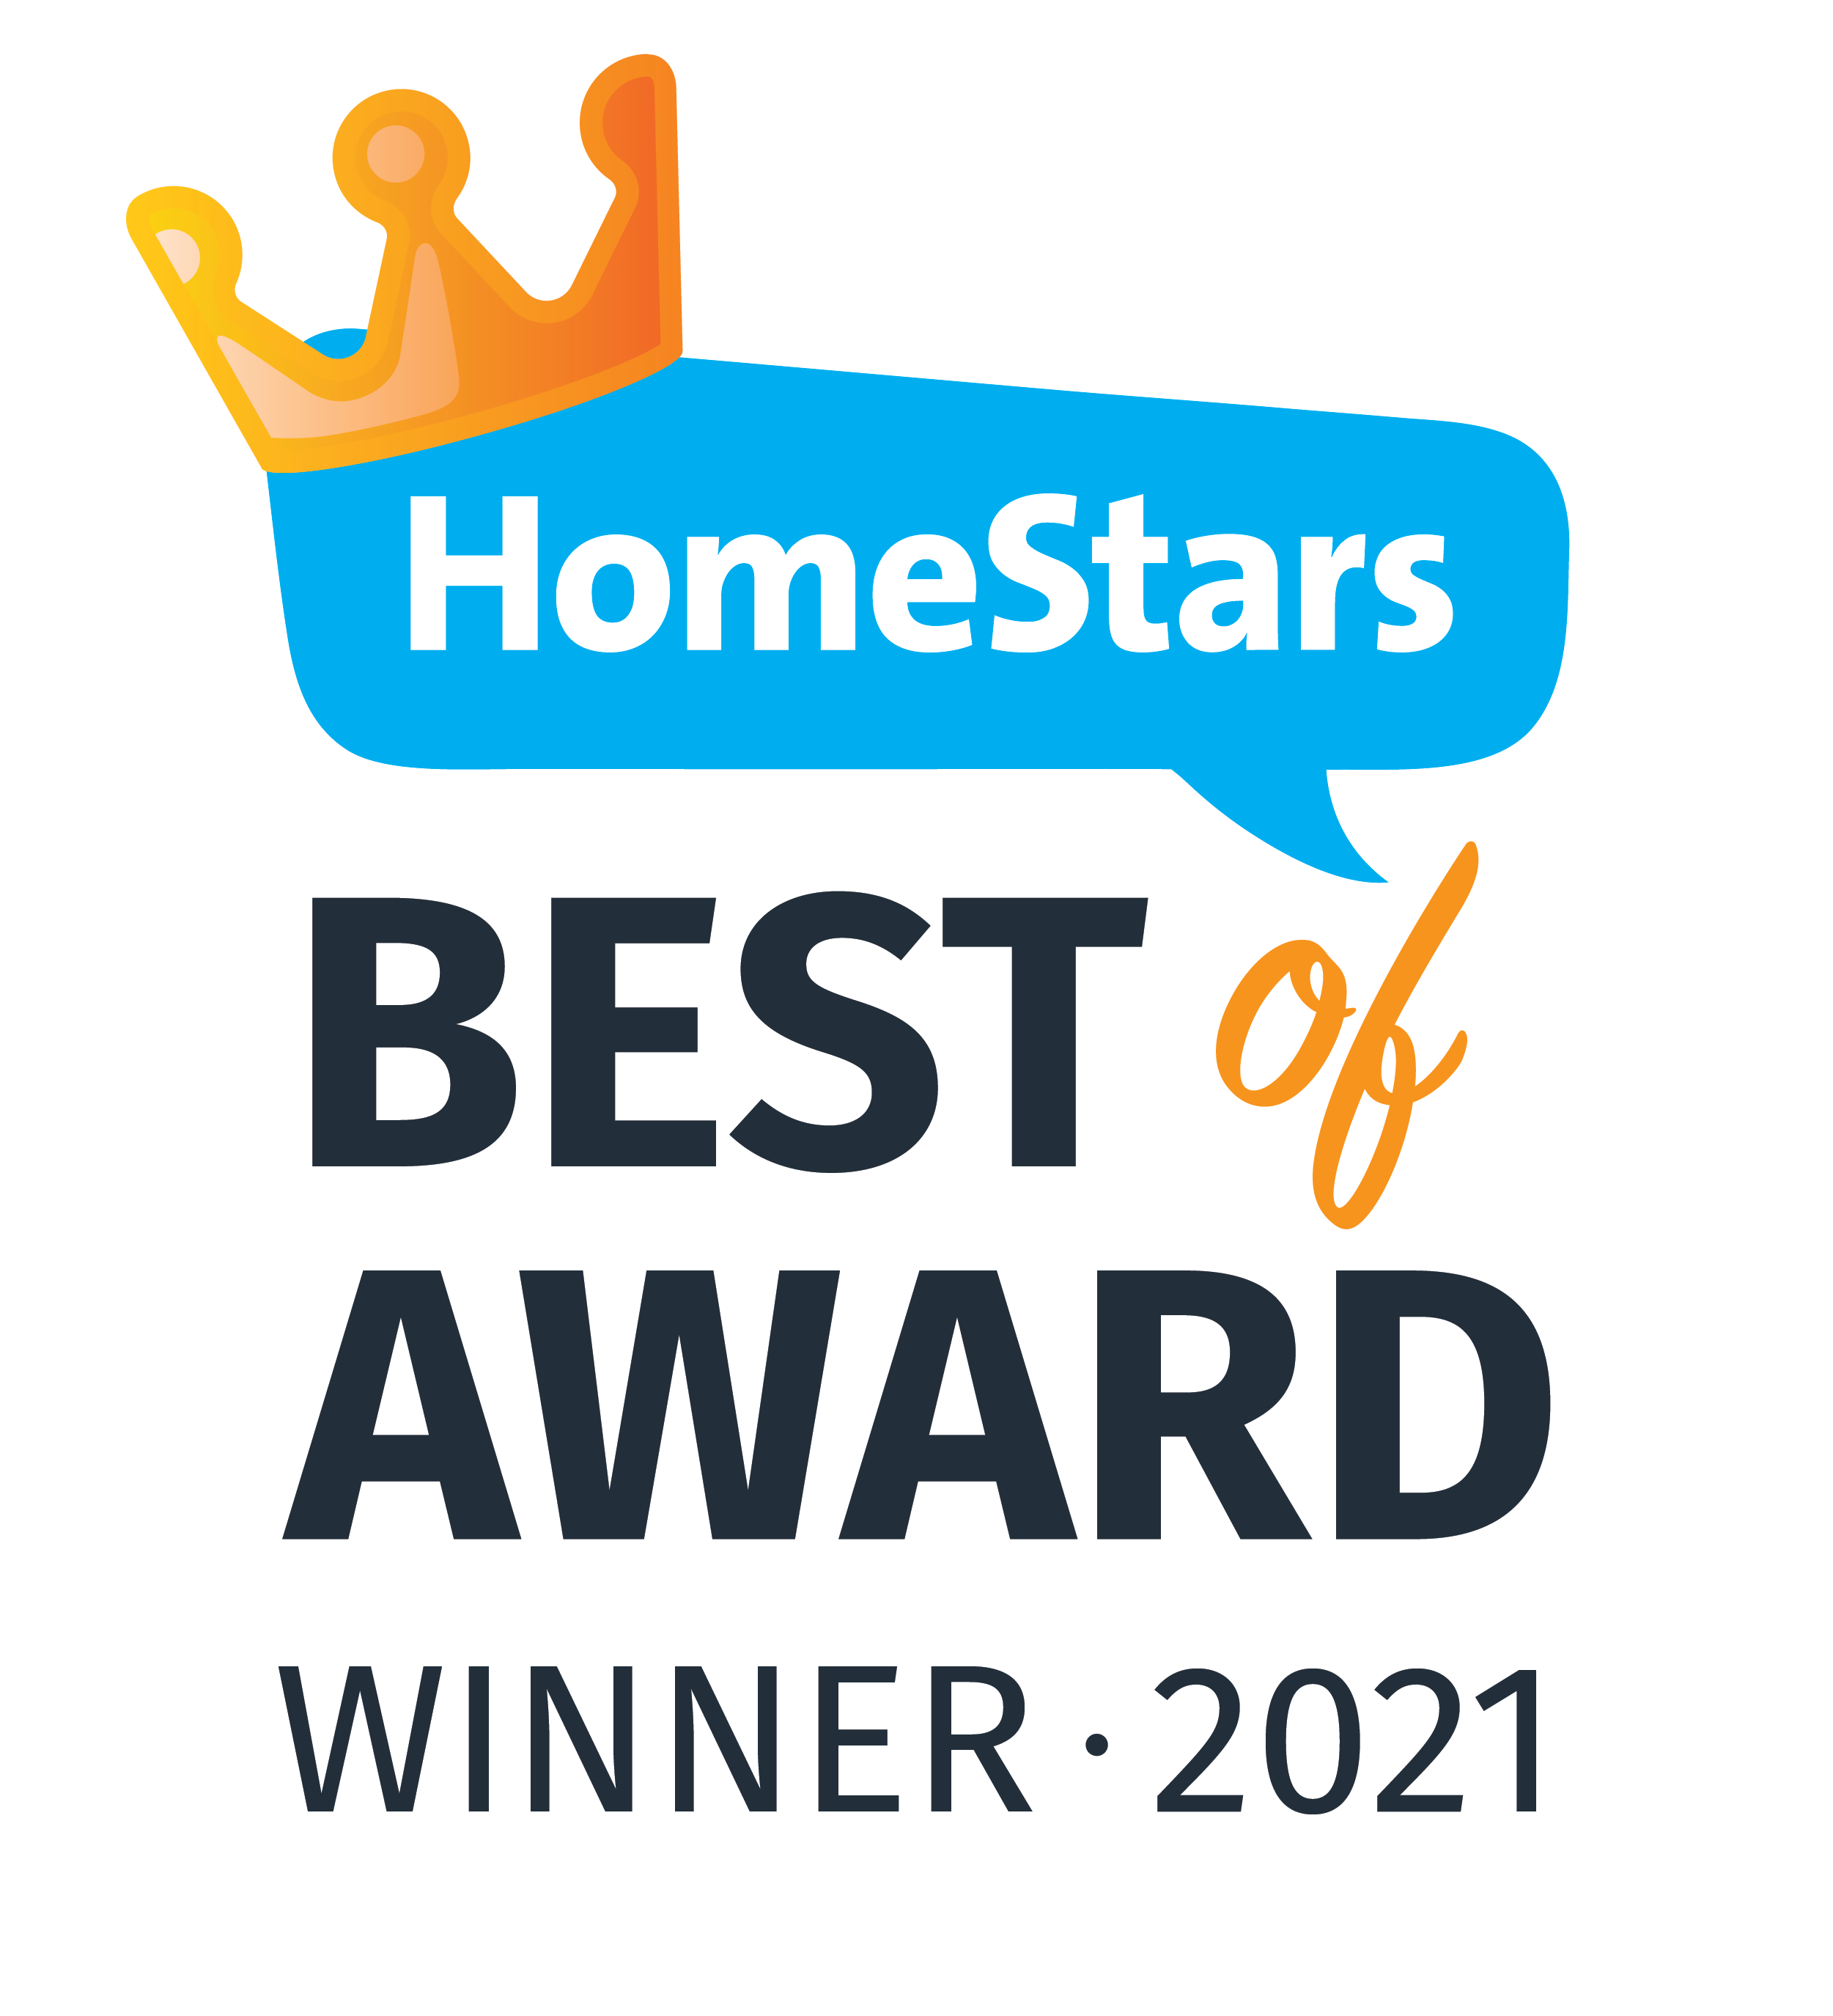 HomeStars Best of Award Winner 2021